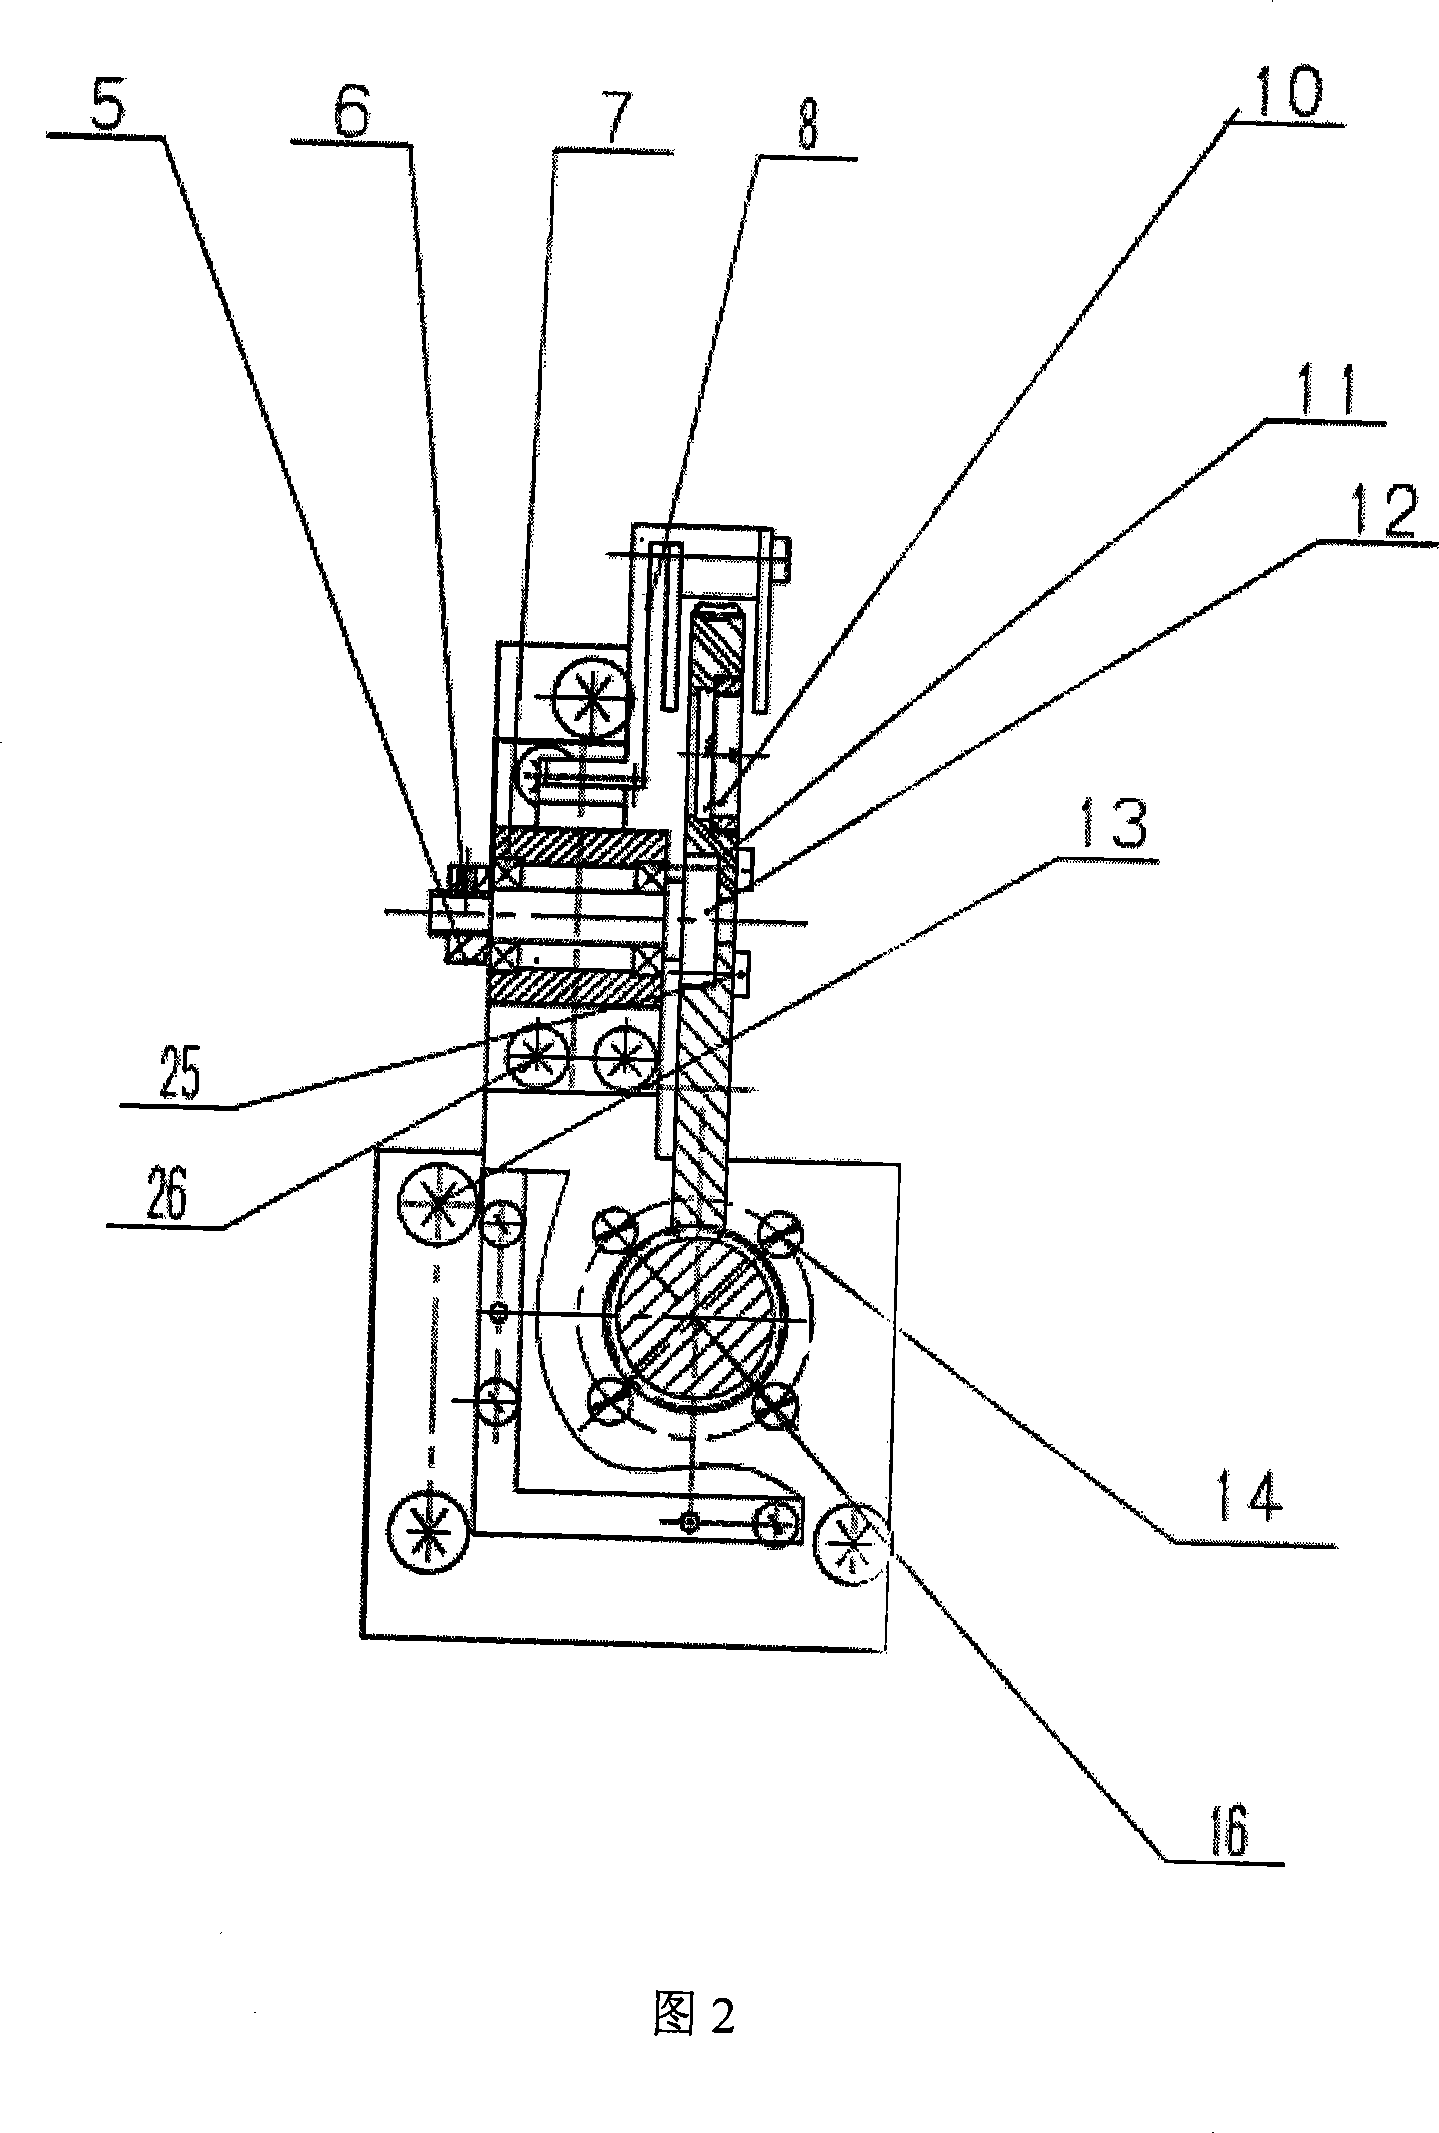 Electric filter light modulation apparatus